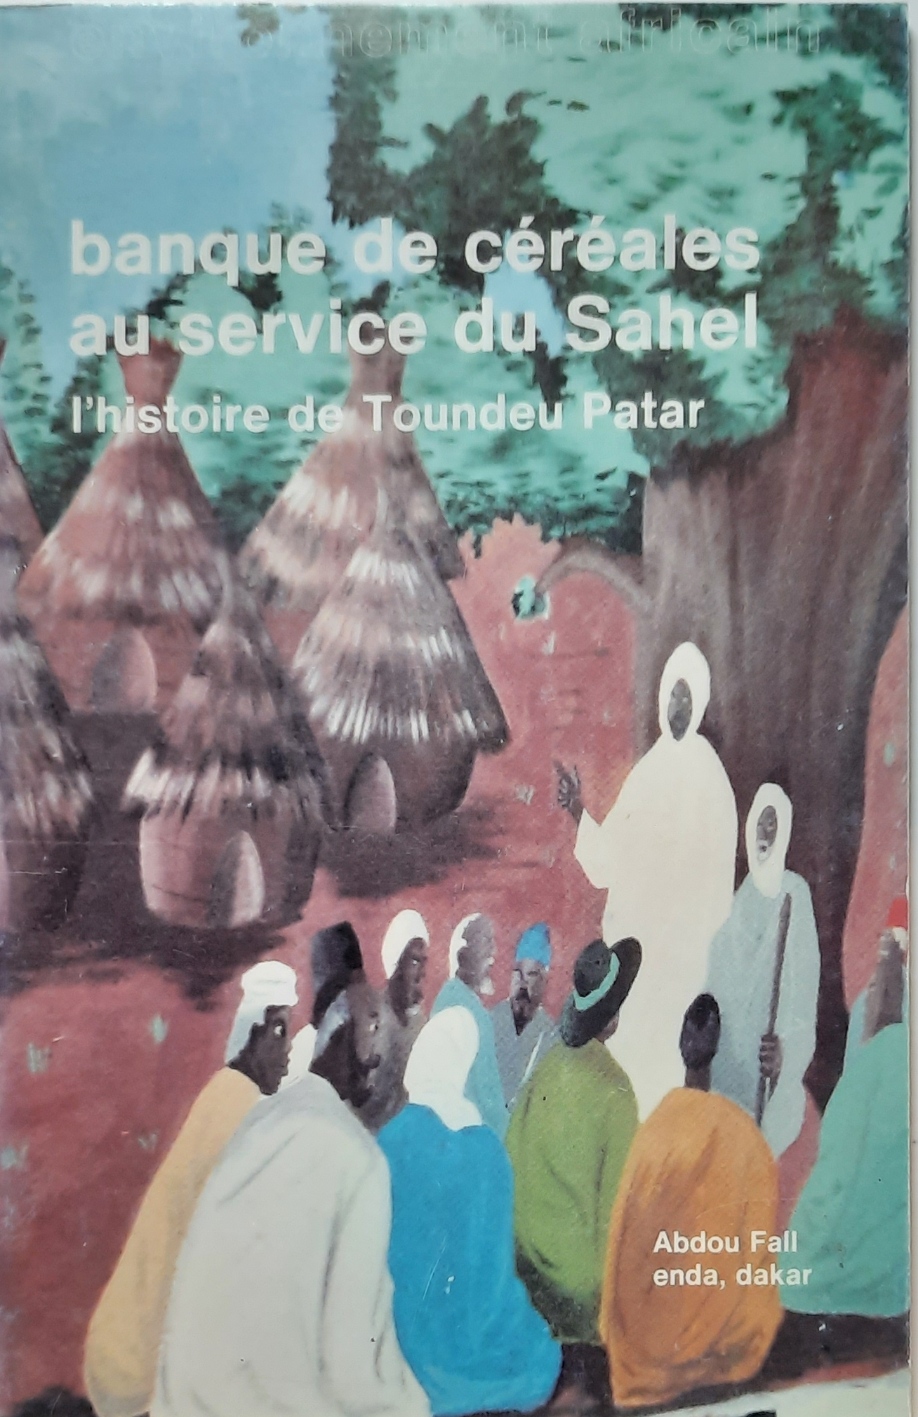 Book cover 202105320096: FALL Abdou | banque de céréales au service du Sahel - l